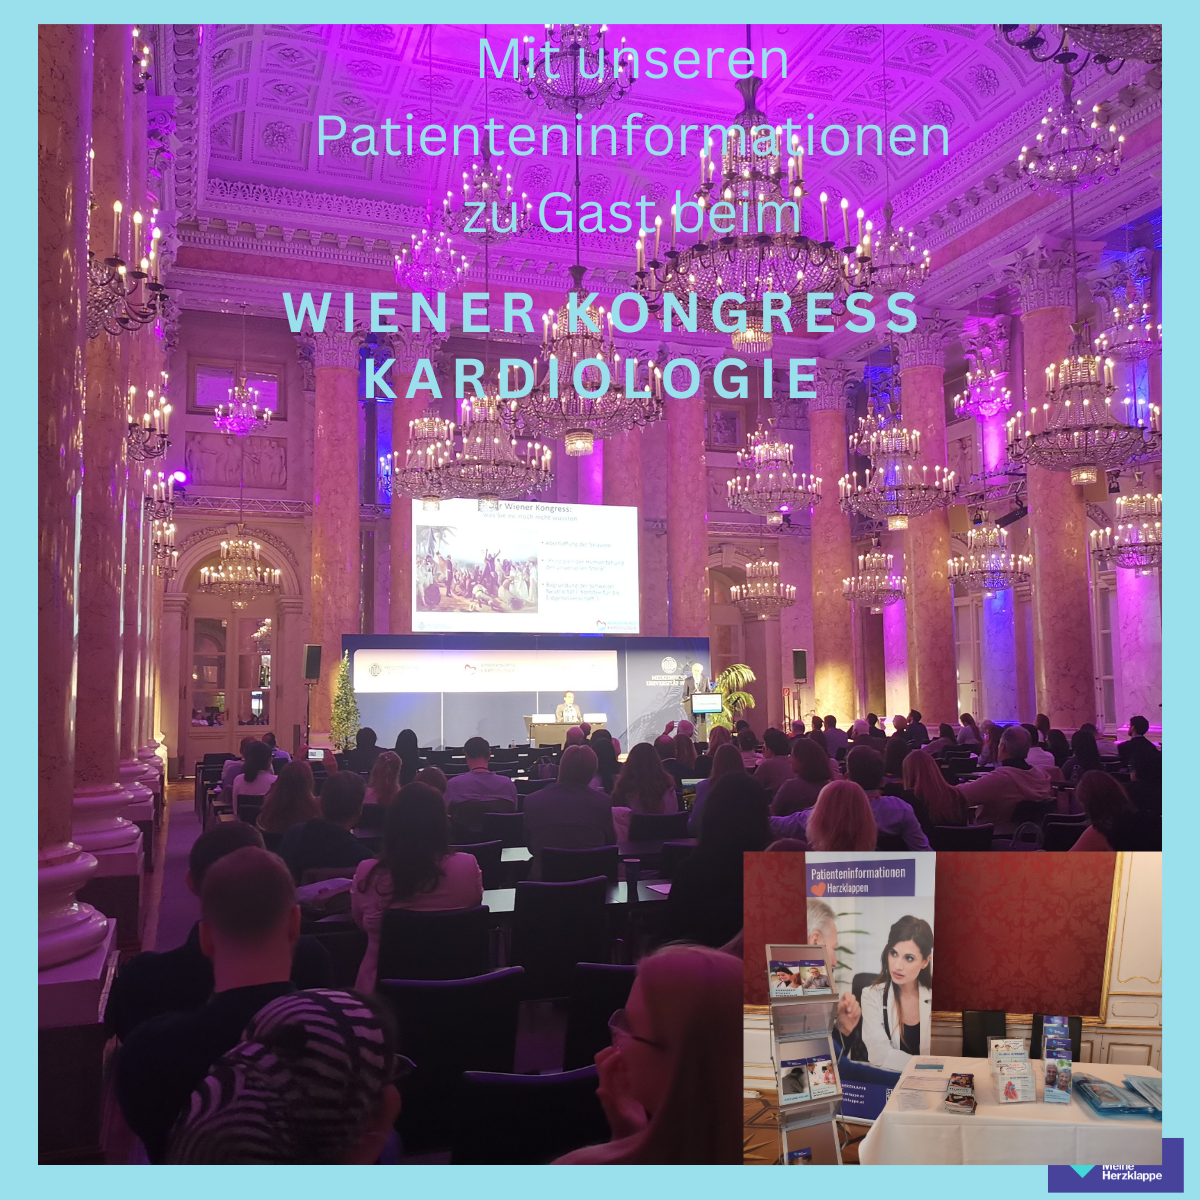 Mit unseren Patienteninformationen zu Gast beim Wiener Kongress Kardiologie